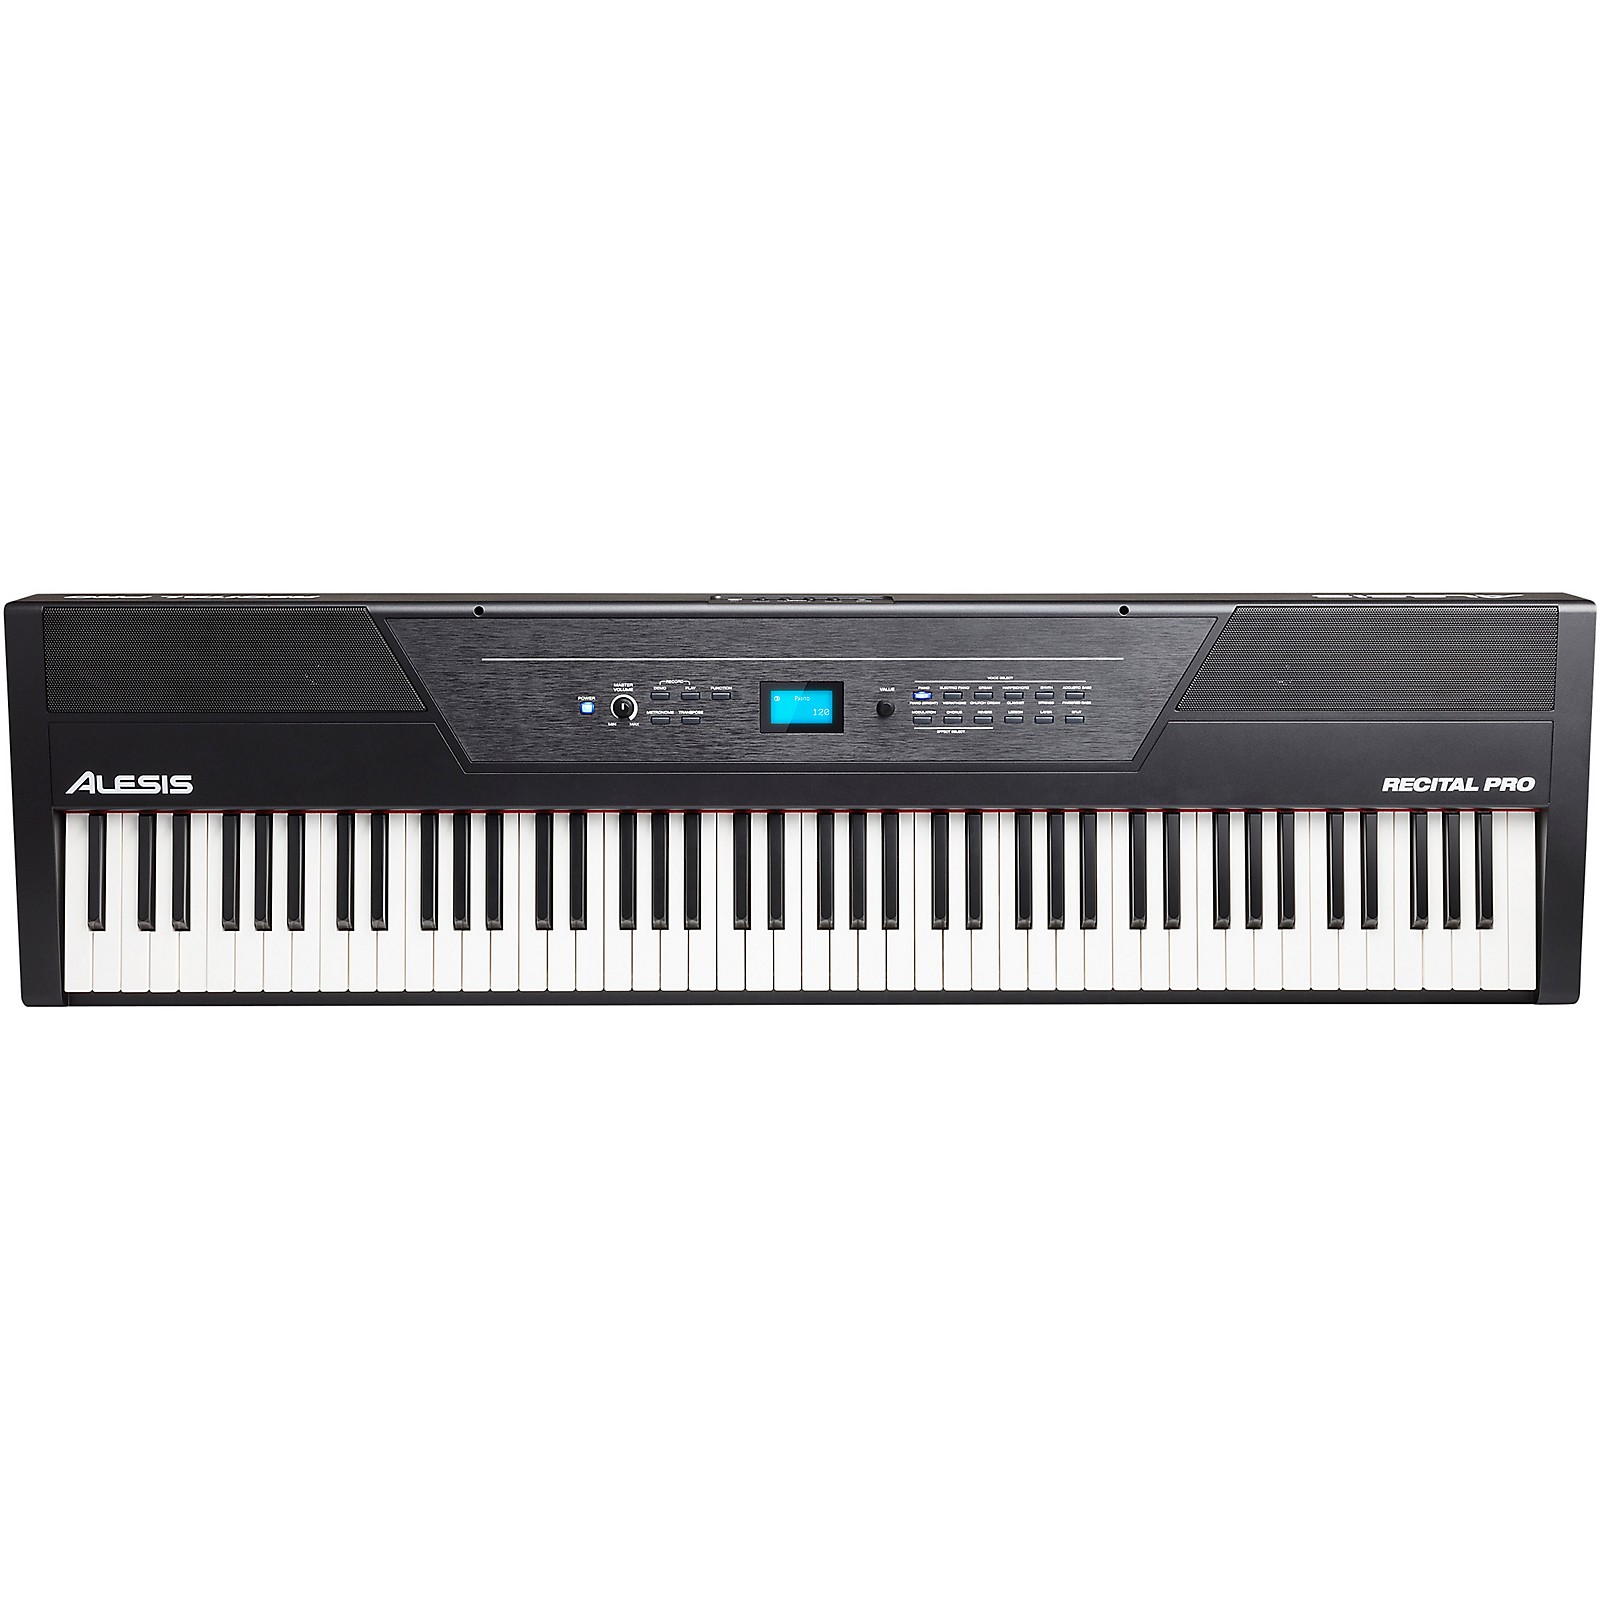 Alesis Recital Pro 88-Key Hammer Action Digital Piano